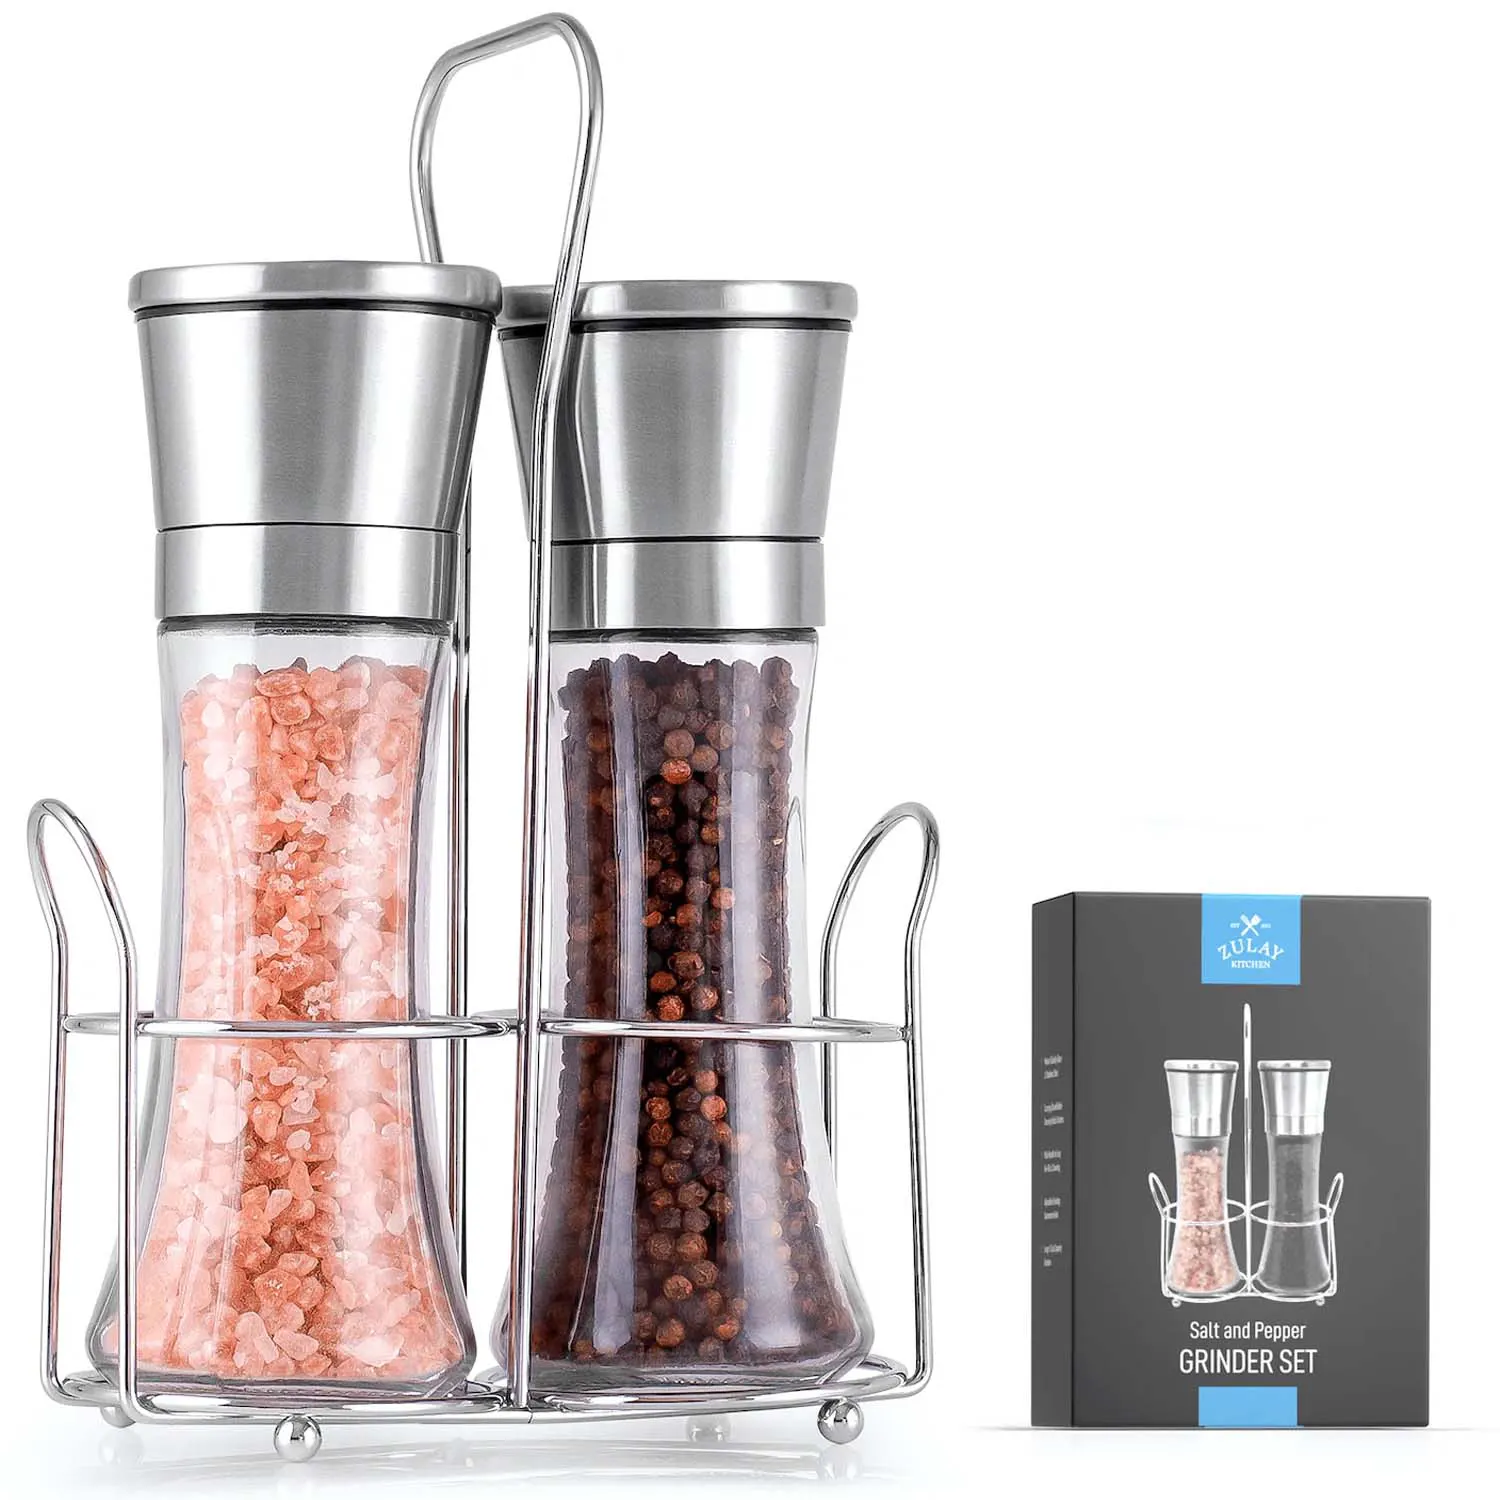 Salt And Pepper Grinder With Adjustable Coarseness Options & Portable Holder